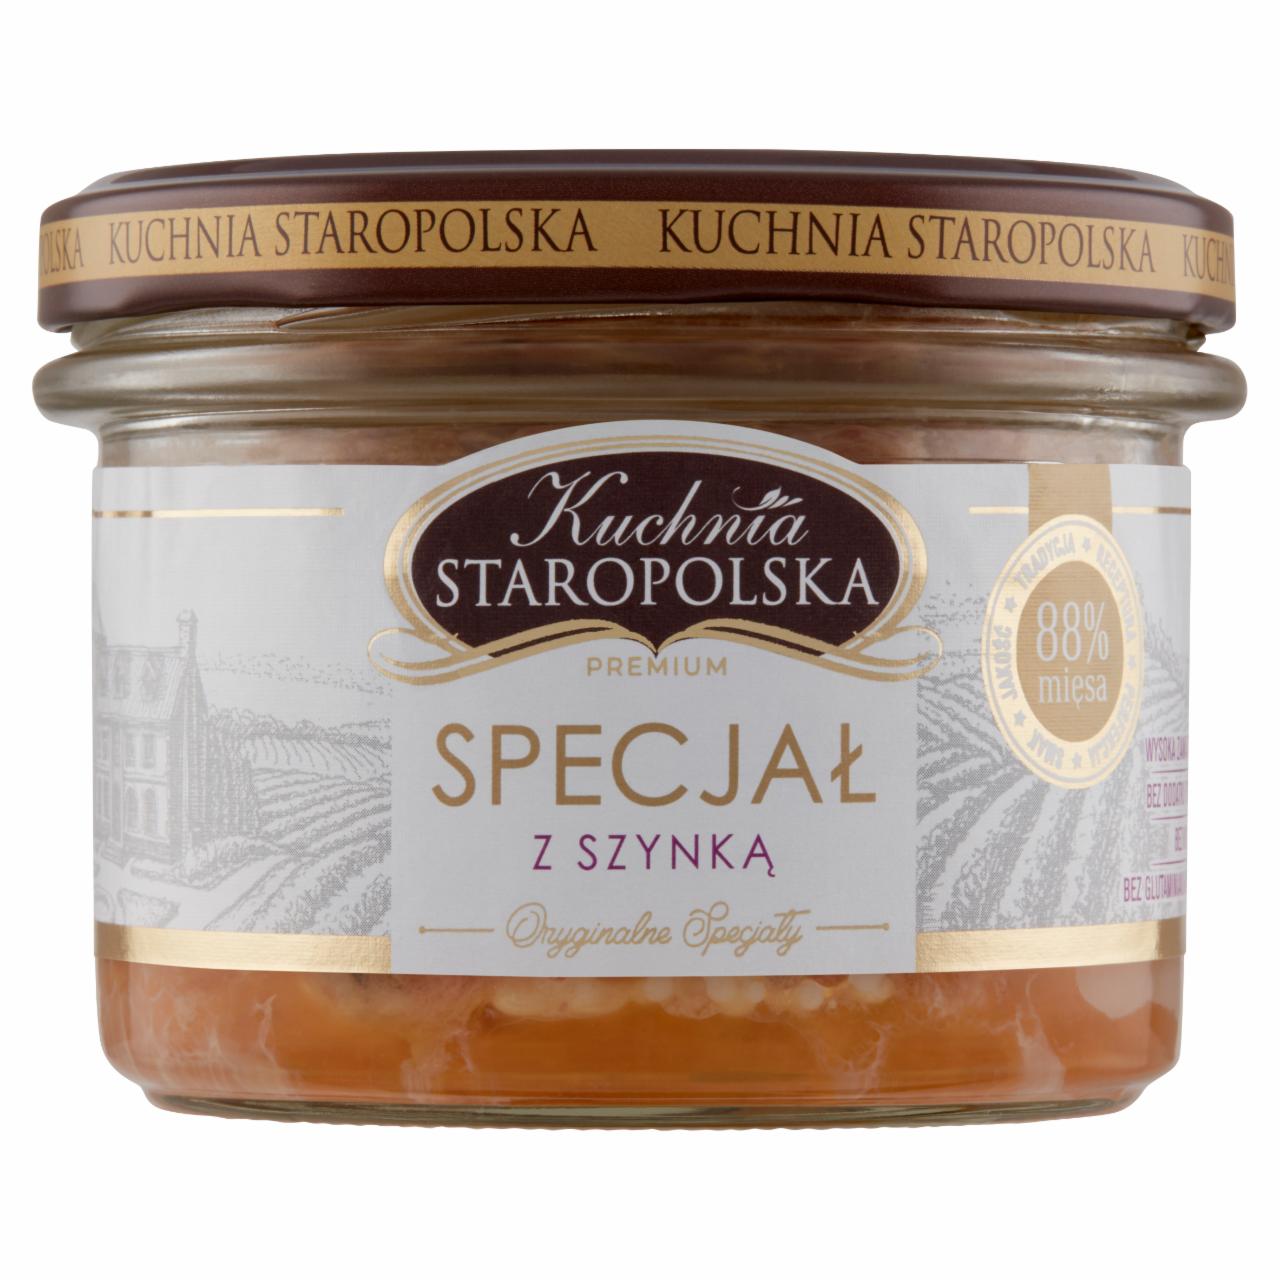 Zdjęcia - Kuchnia Staropolska Premium Specjał z szynką 160 g